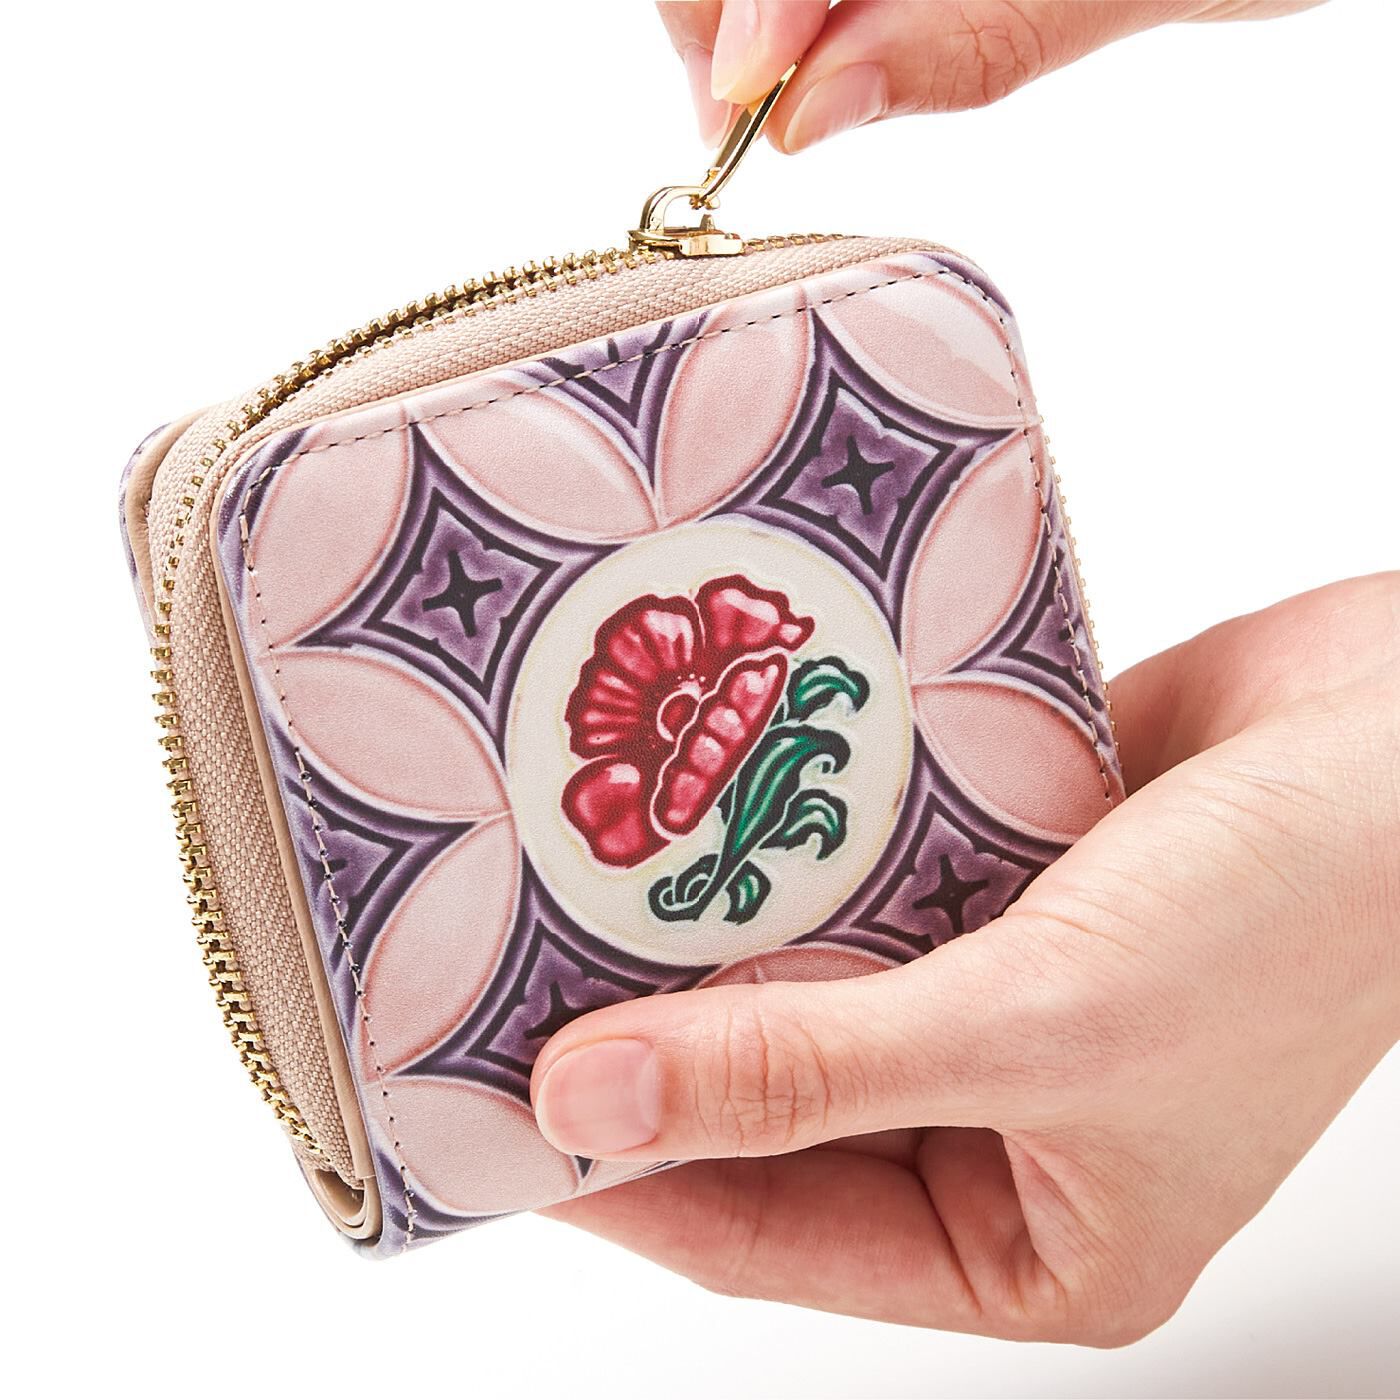 フェリシモの雑貨 Kraso|『世界のタイル博物館』和製マジョリカタイル模様の二つ折り財布|二つ折りで手のひらにすっぽり収まるコンパクト設計。